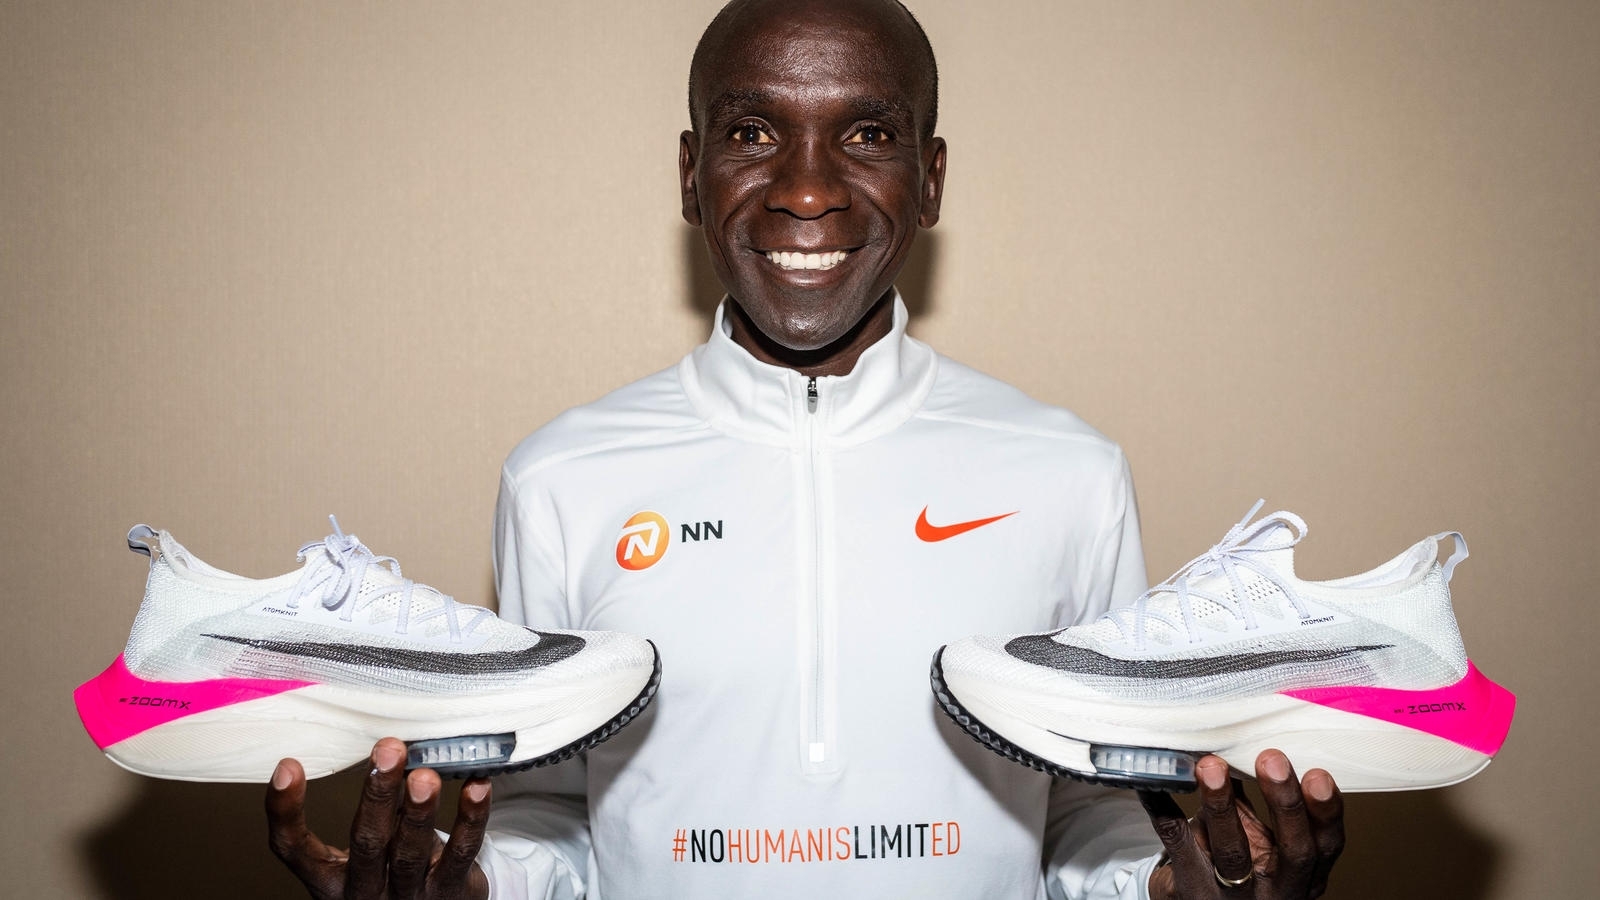 身為 Nike 代言人的 Eliud Kipchoge，挑戰比賽、破紀錄的鞋款受到許多跑者喜愛，甚至有 80% 穿著 Nike 跑鞋的跑者曾著用過他的鞋款